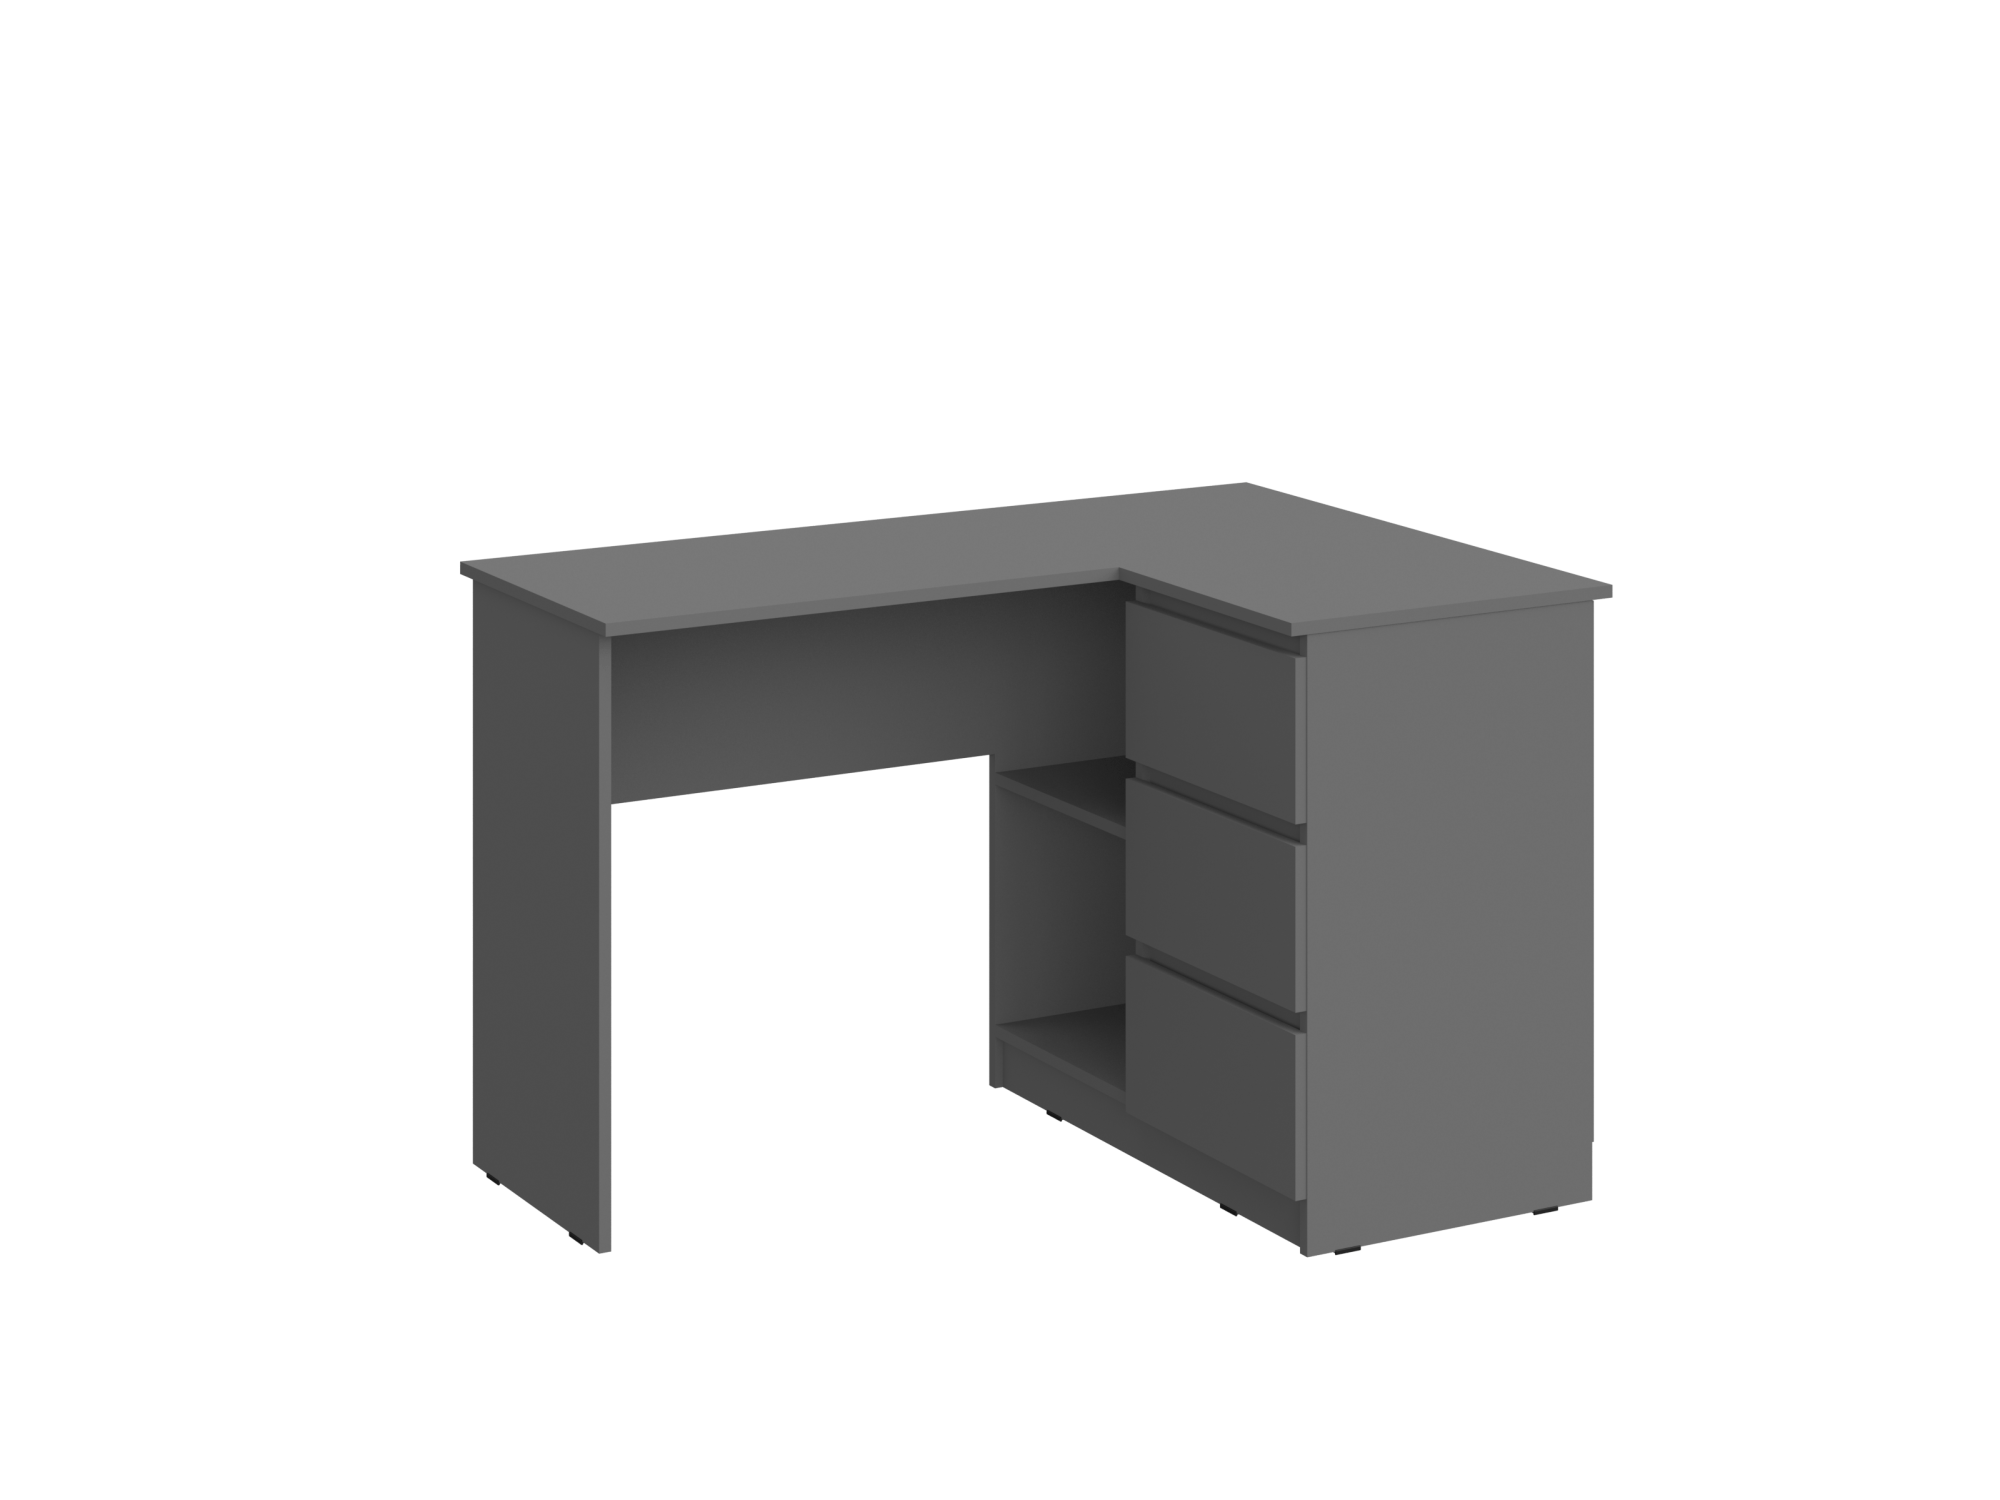 Челси Стол письменный угловой (Графит, Графит) Графит, Черный, ЛДСП письменный стол для руководителя ящики для кабинета деревянный итальянский офисный стол угловой стол офисная мебель